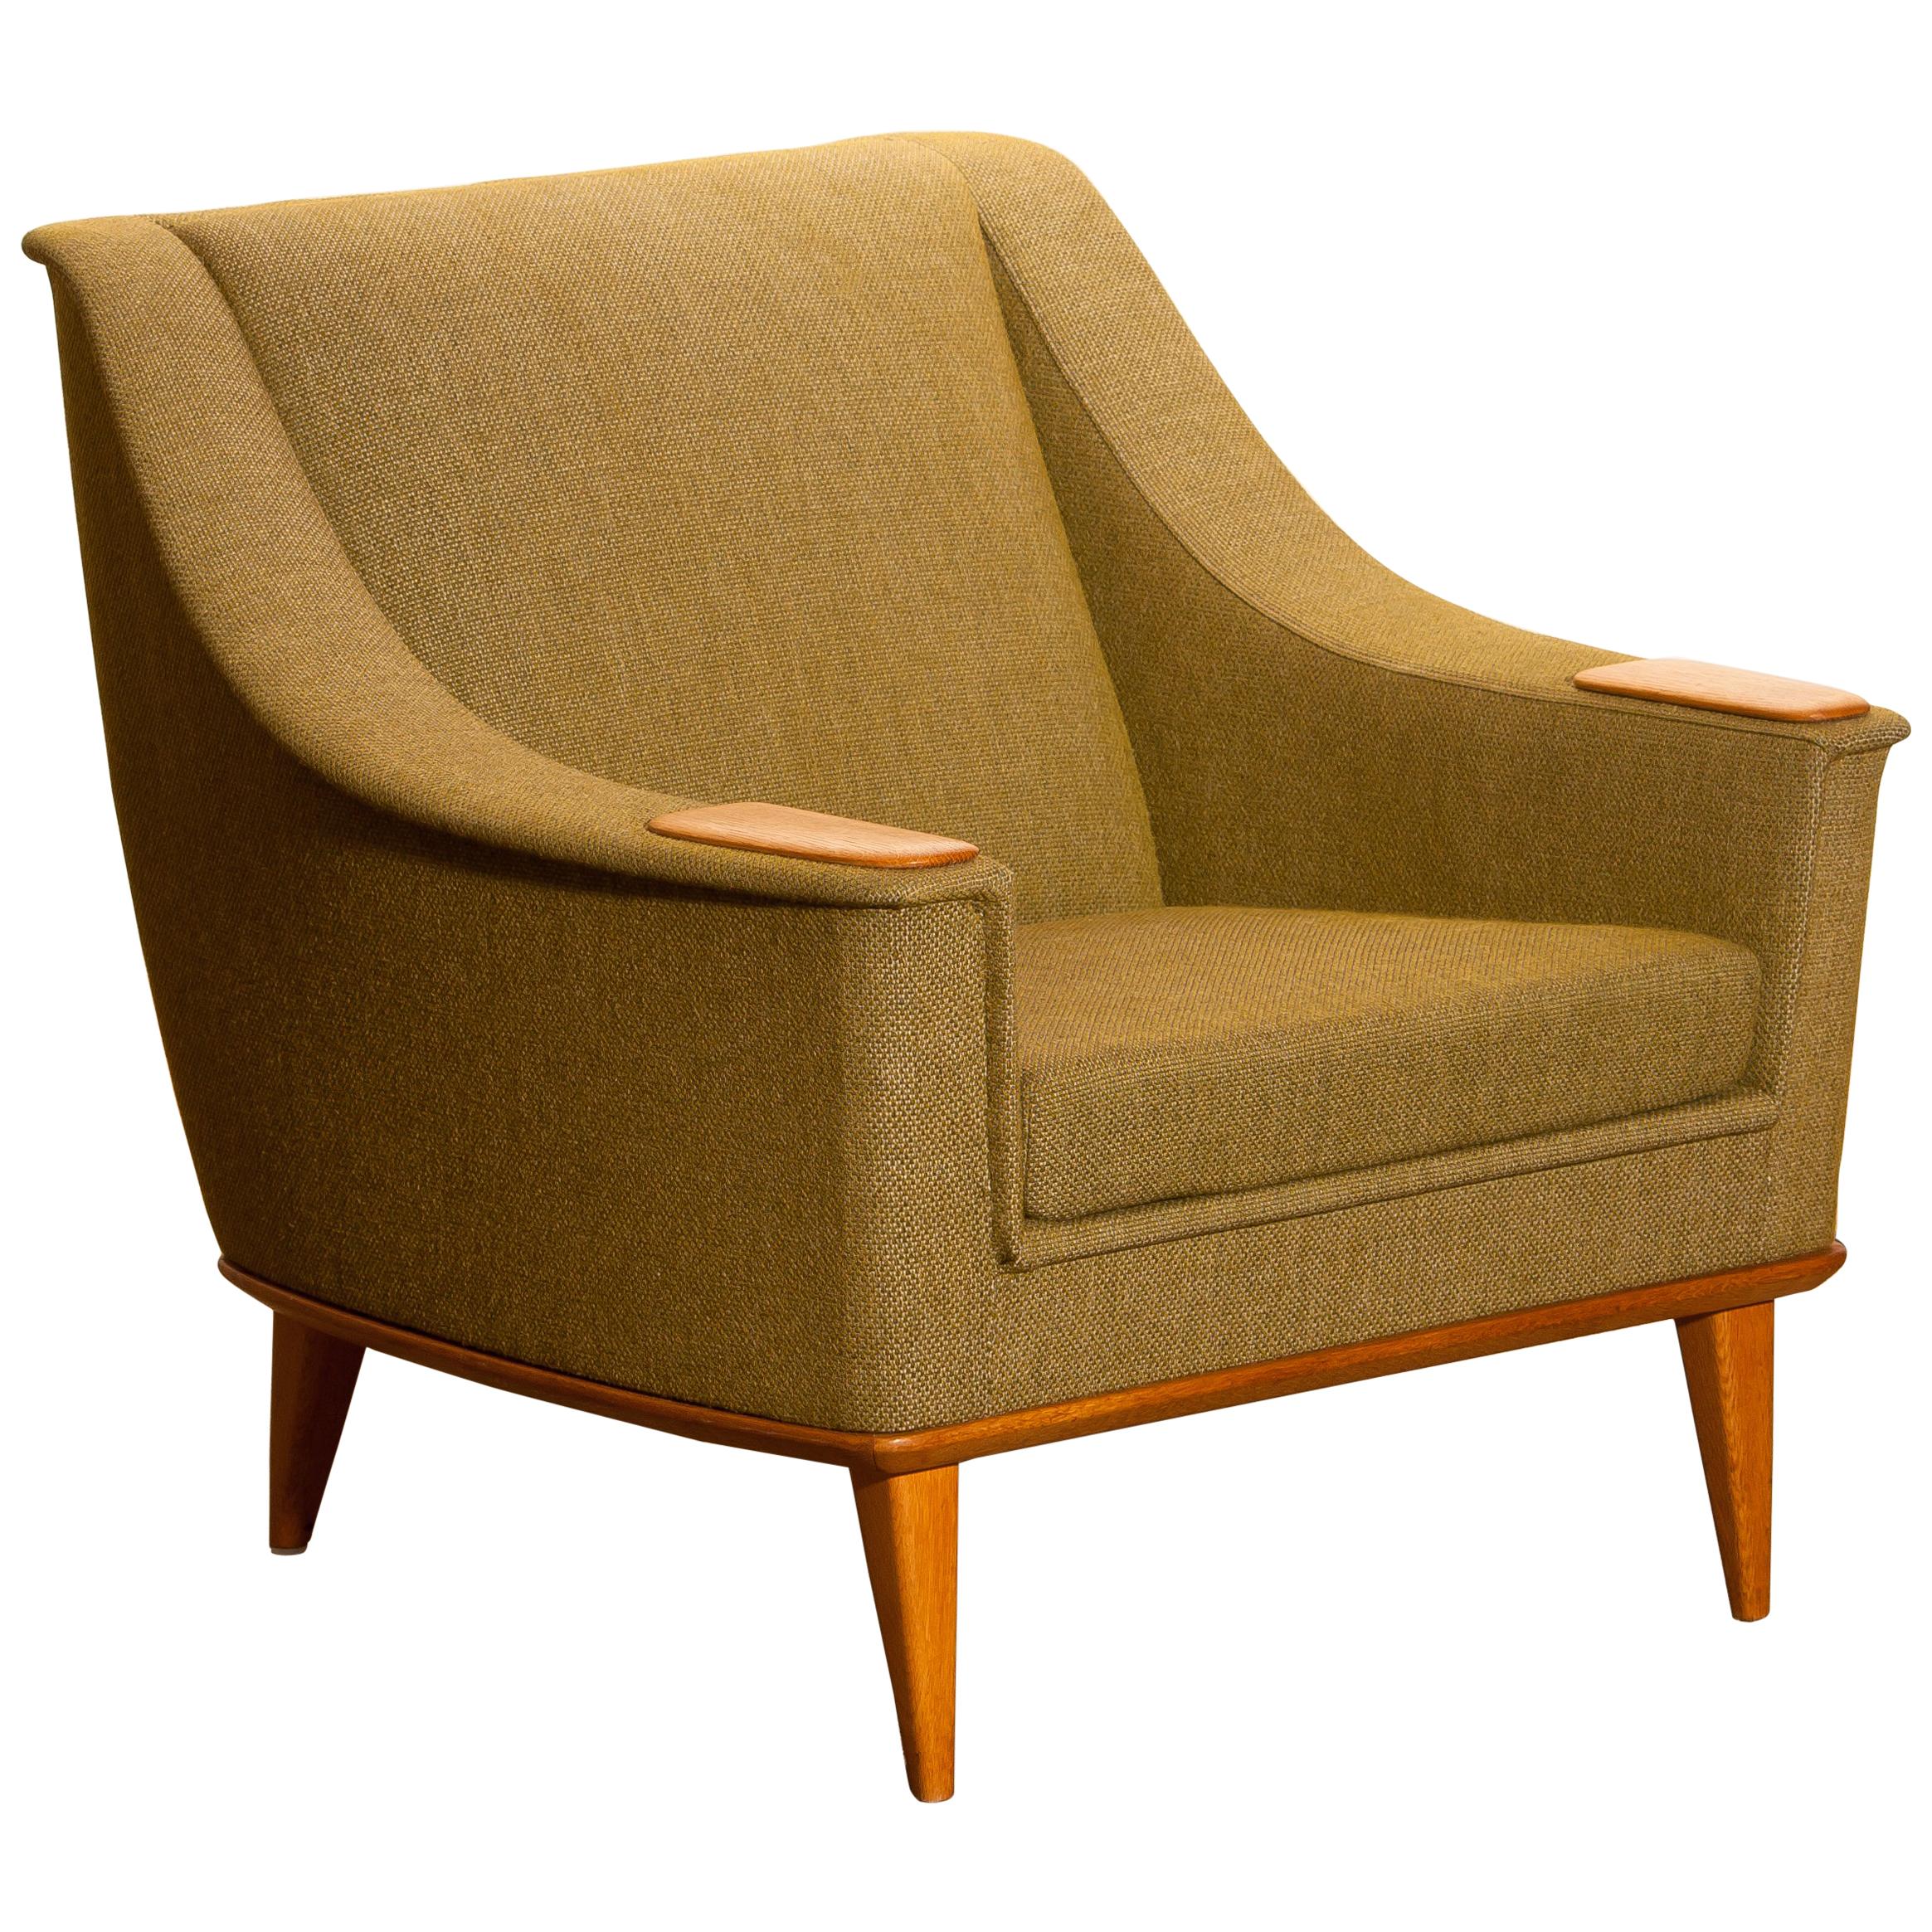 Fabric 1960s, Green Upholstered Oak Lounge / Easy Chair, Folke Ohlsson for DUX, Sweden